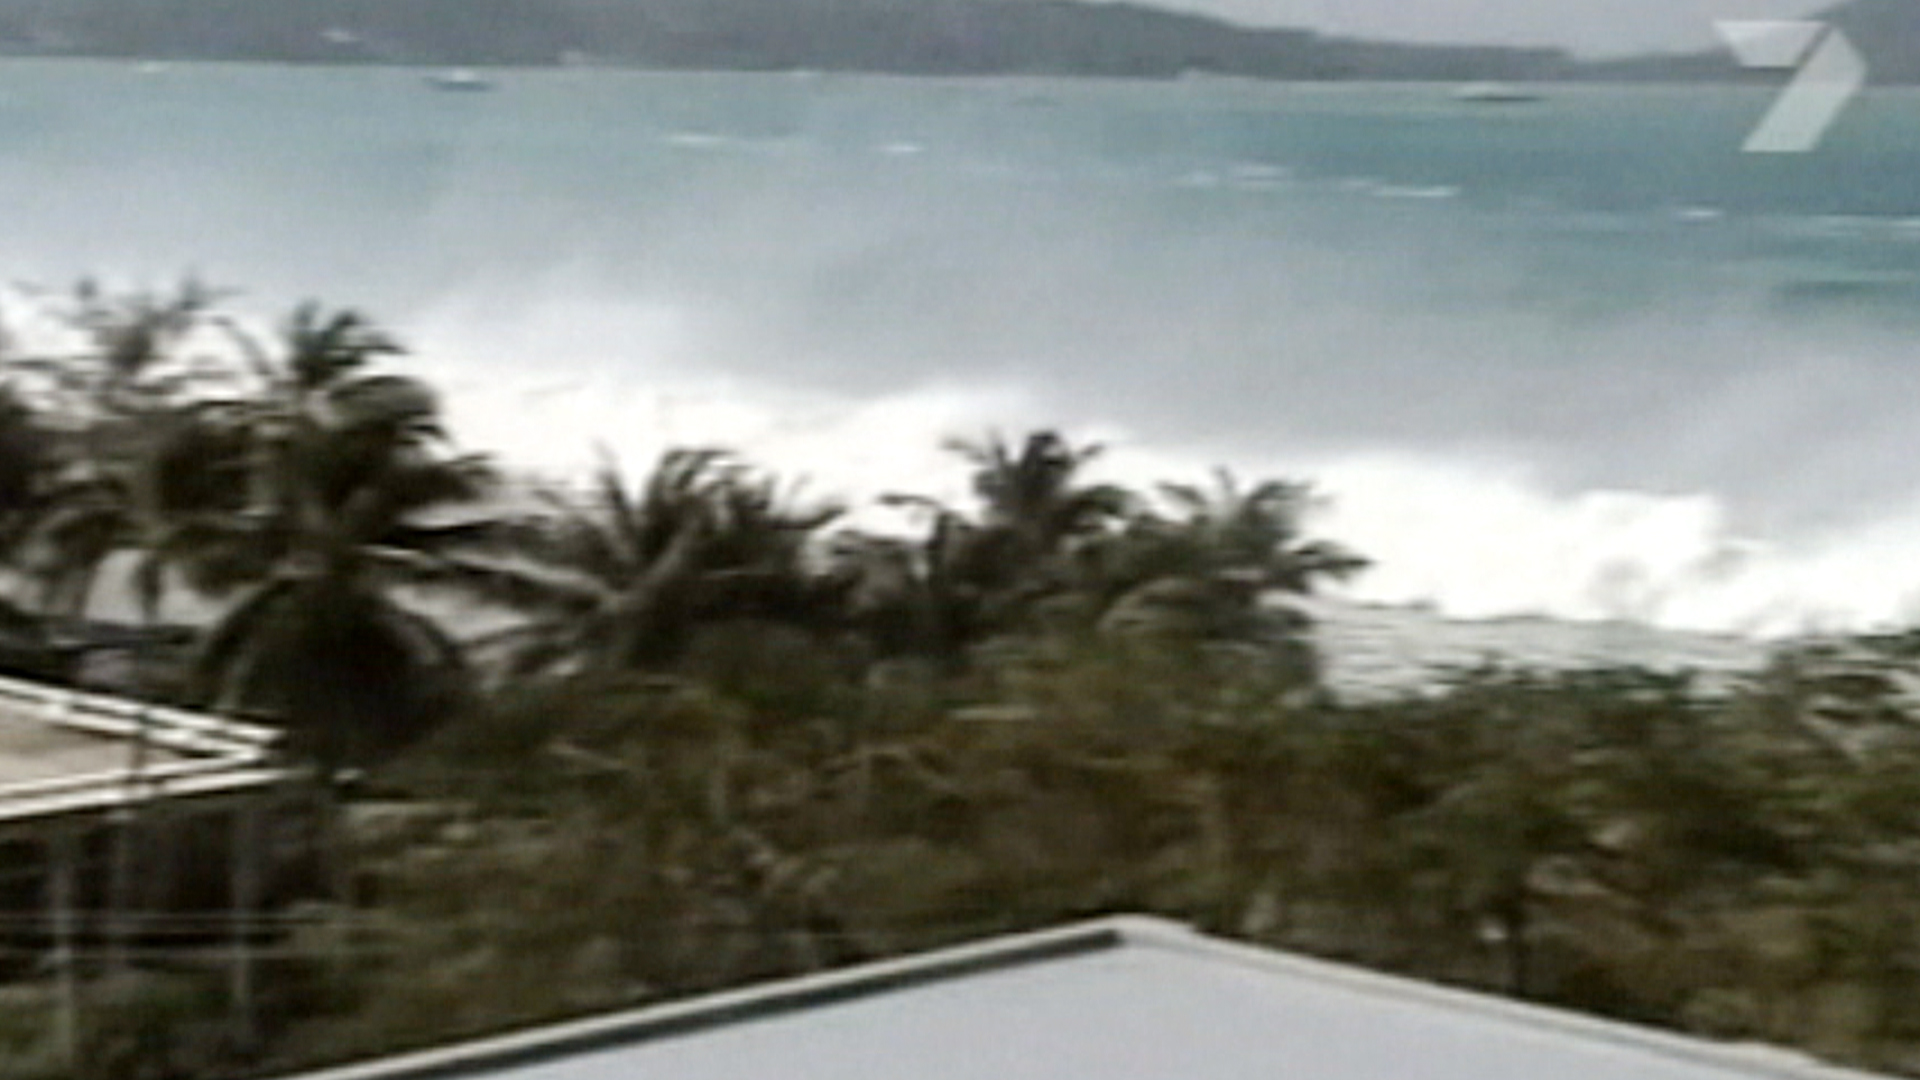 пляж карон после цунами 2004